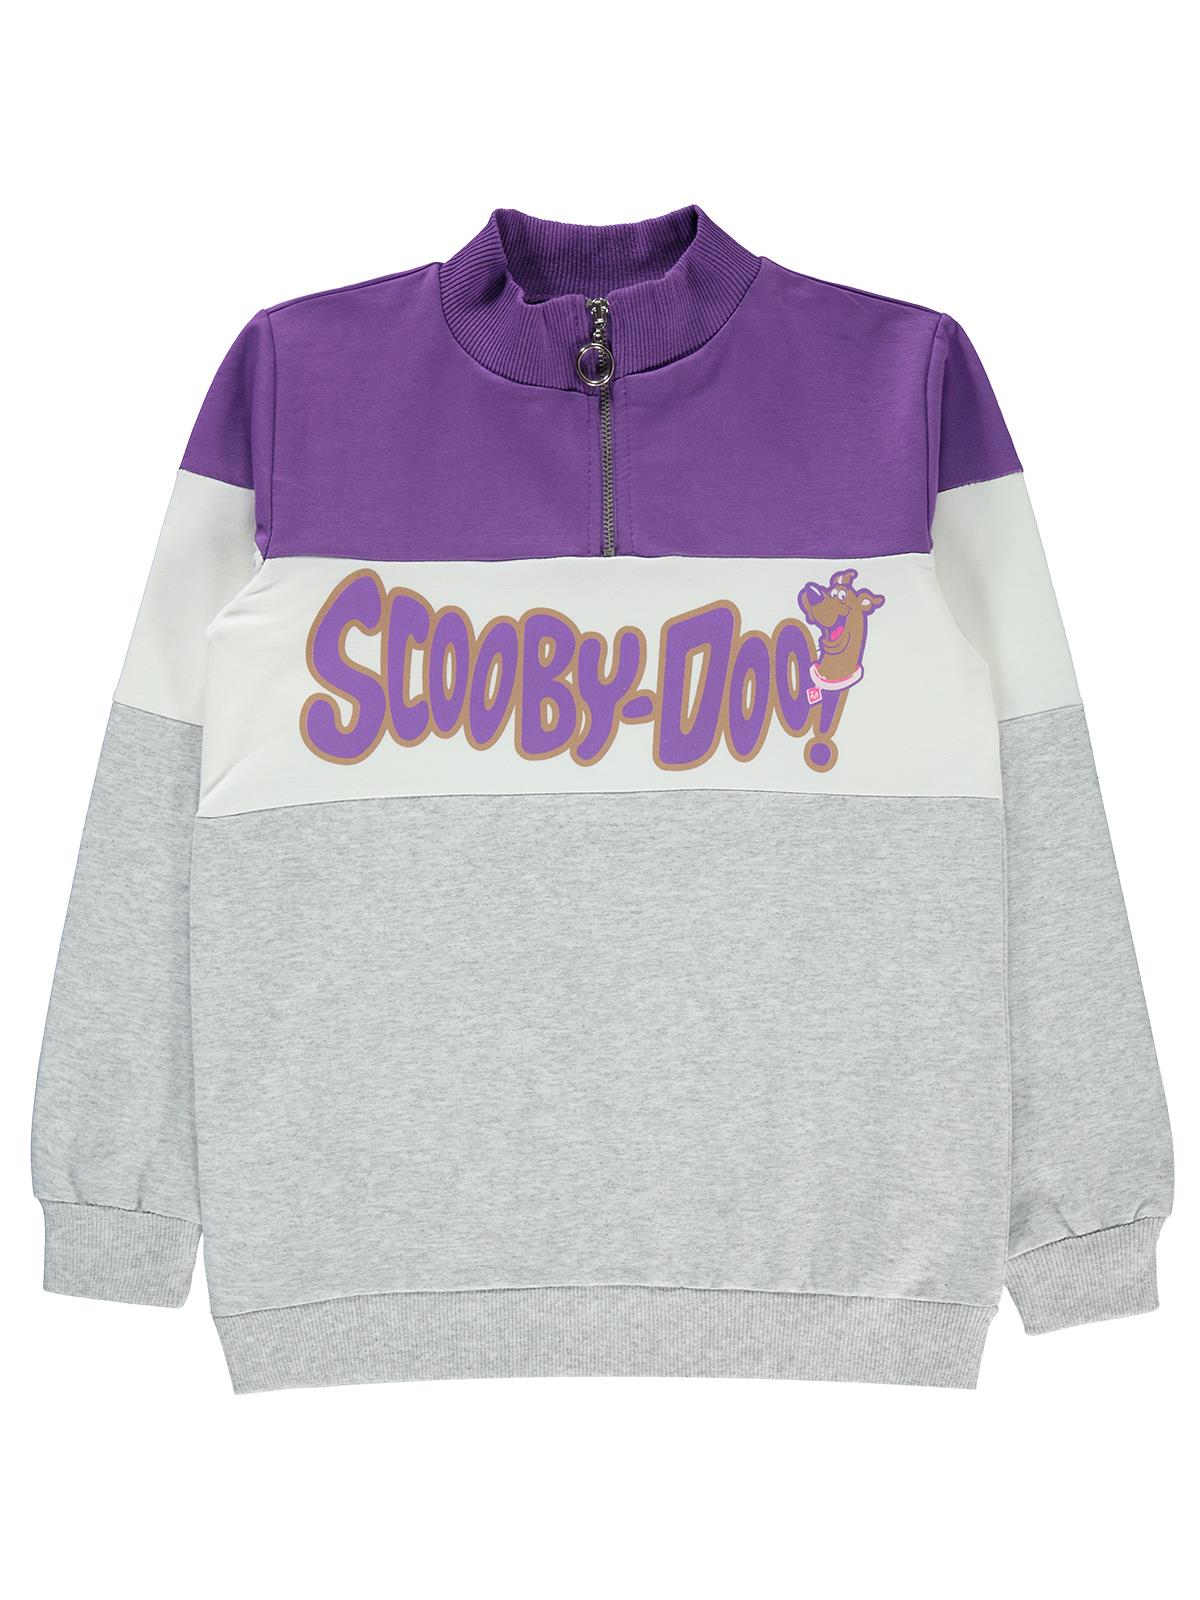 Scooby Doo Kız Çocuk Sweatshirt 10-13 Yaş Mor